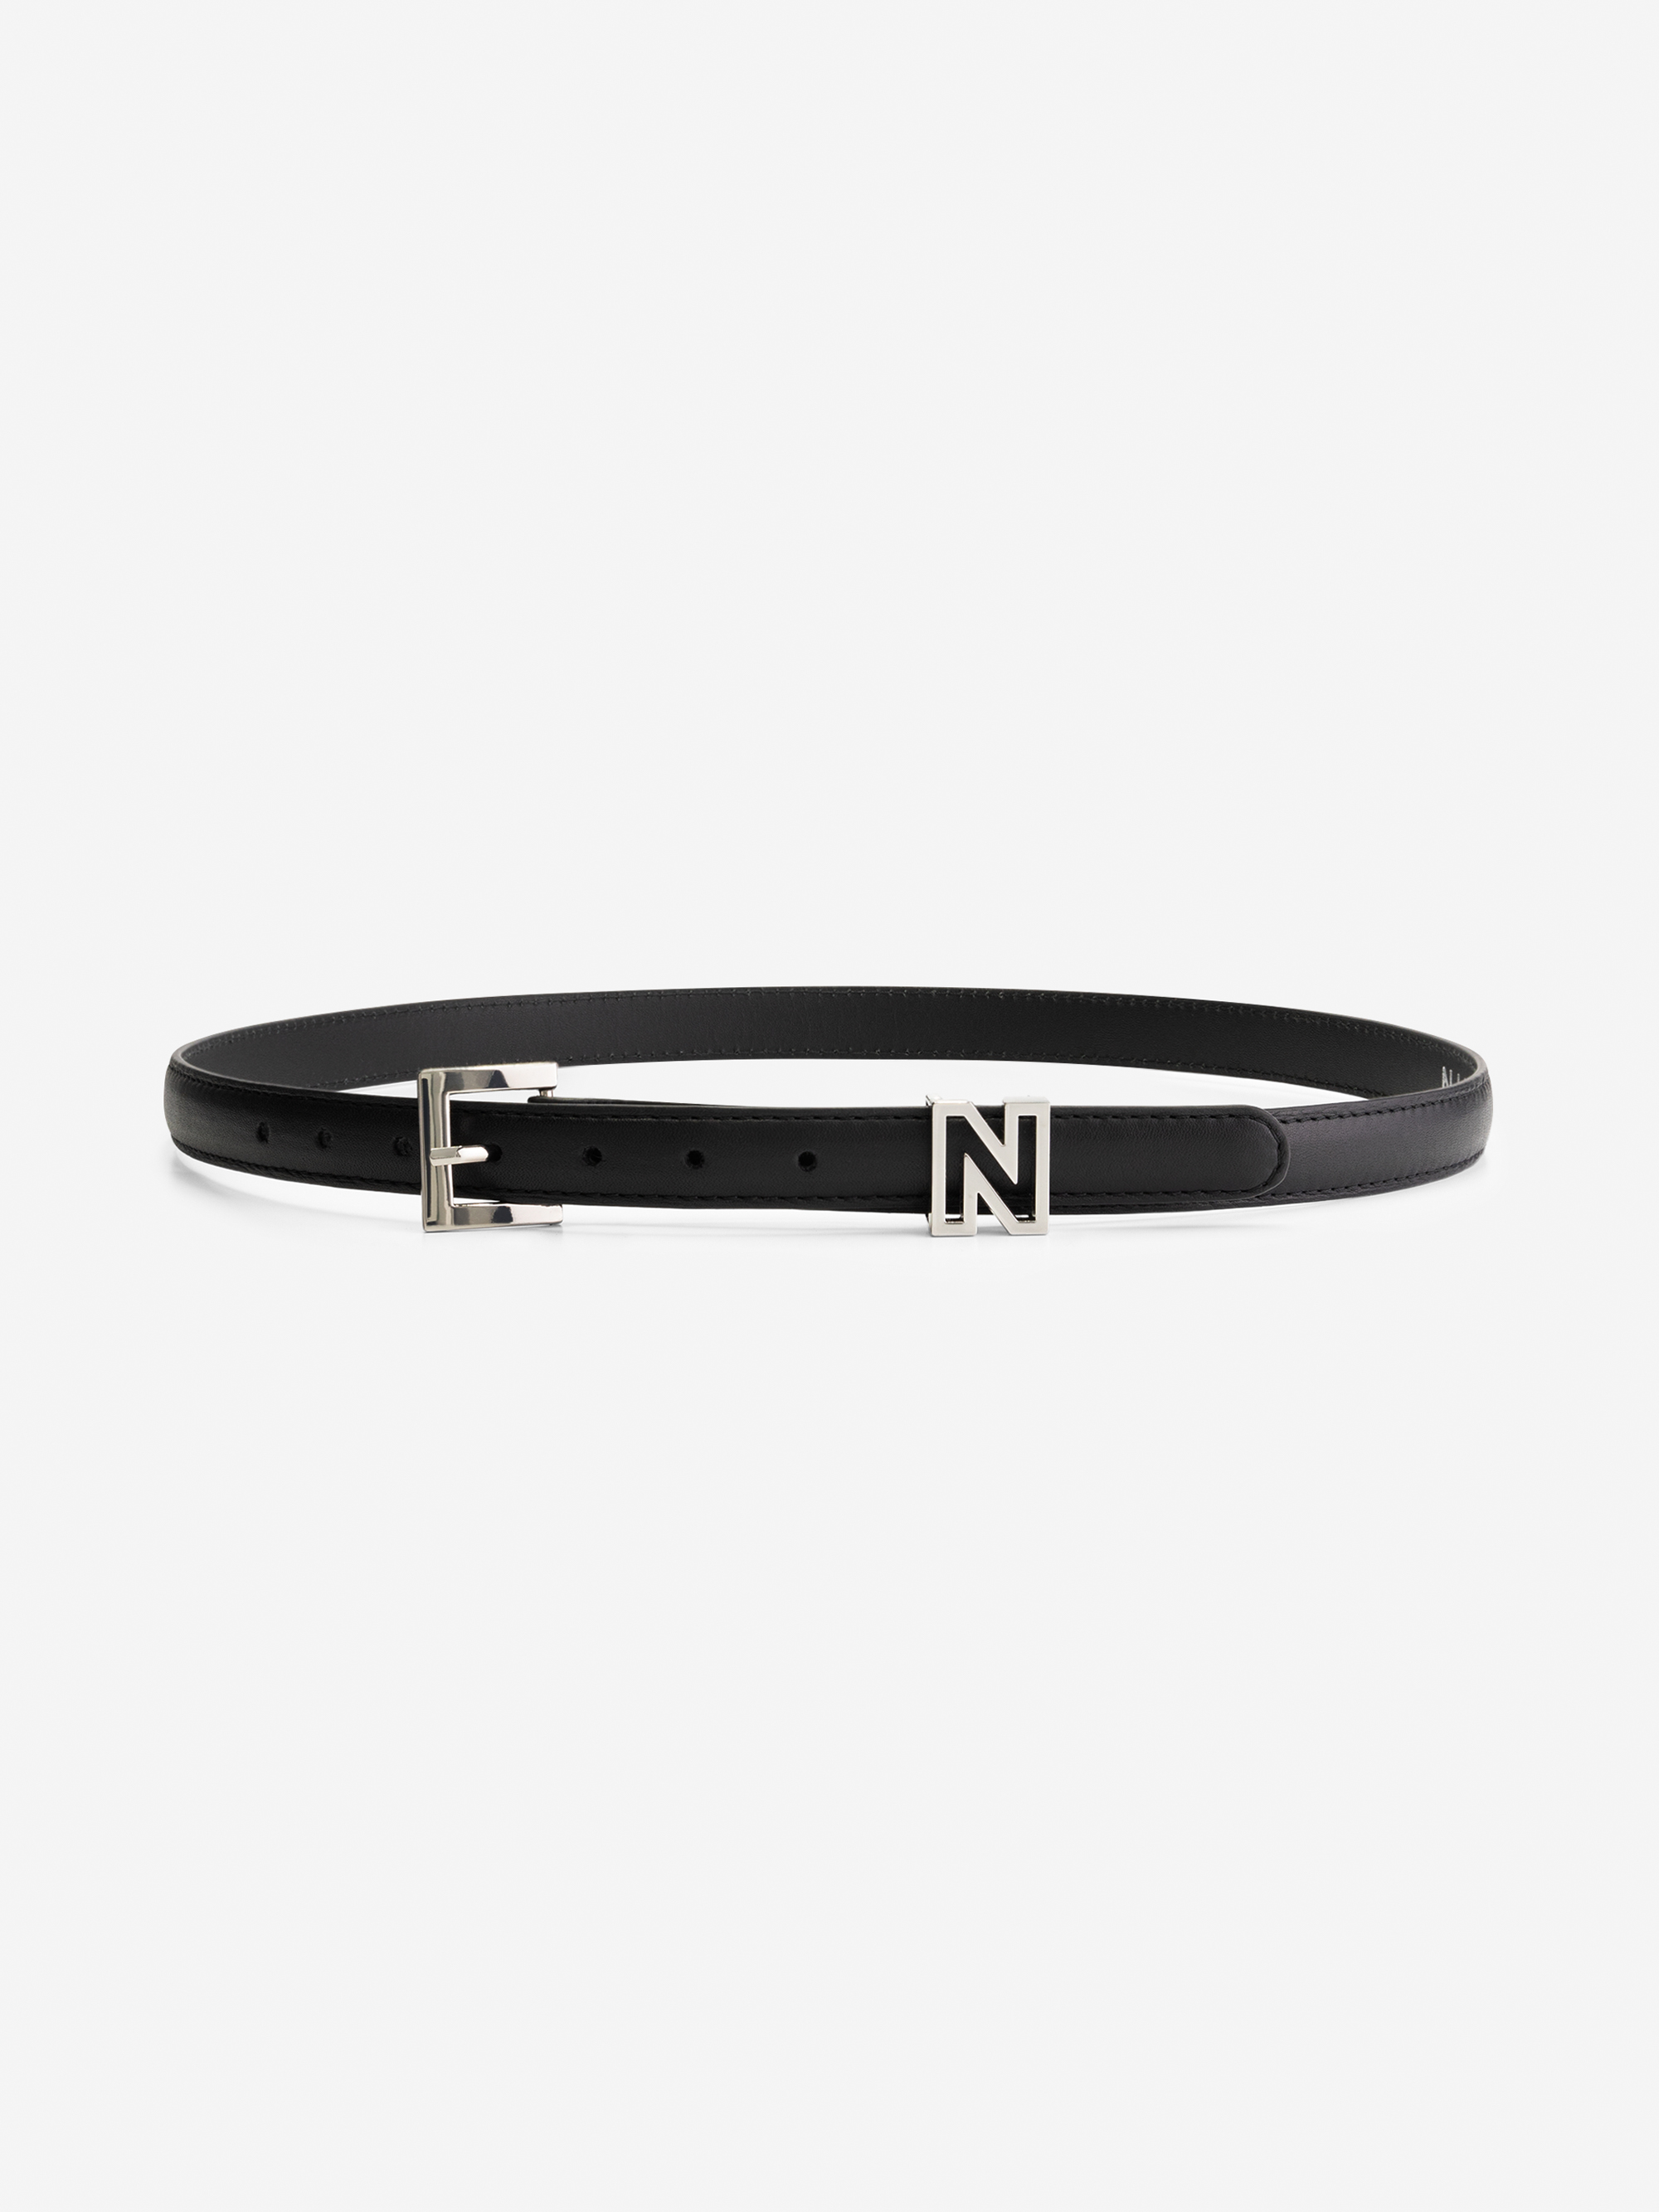 Thin belt with N logo